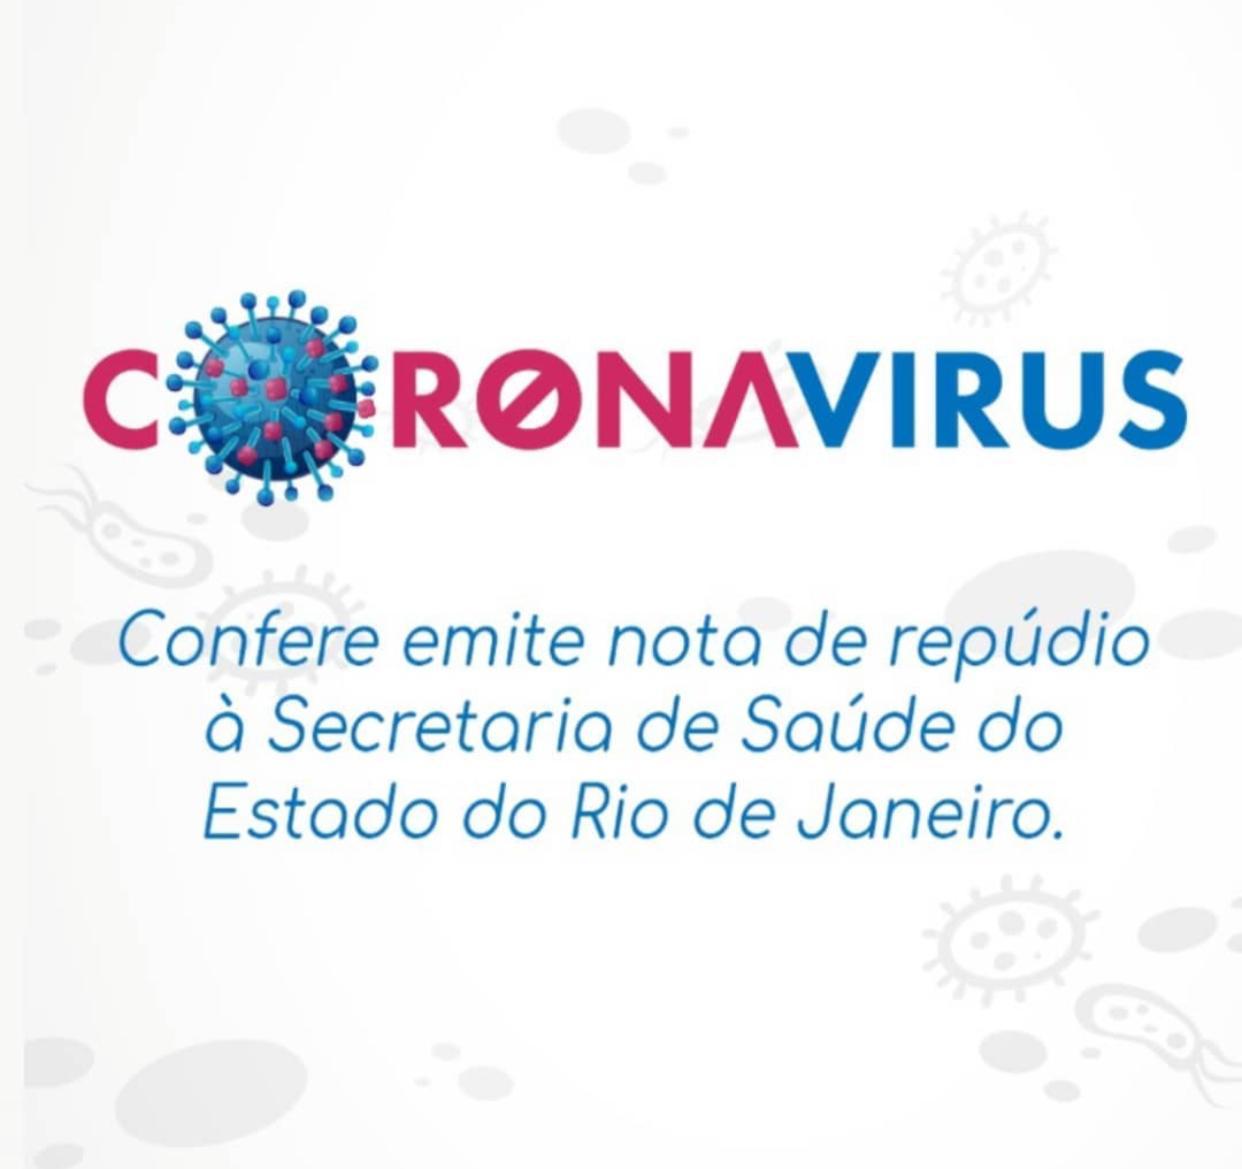 Core-CE replica nota de repúdio do Confere à determinação da Secretaria de Saúde do Estado do Rio de Janeiro